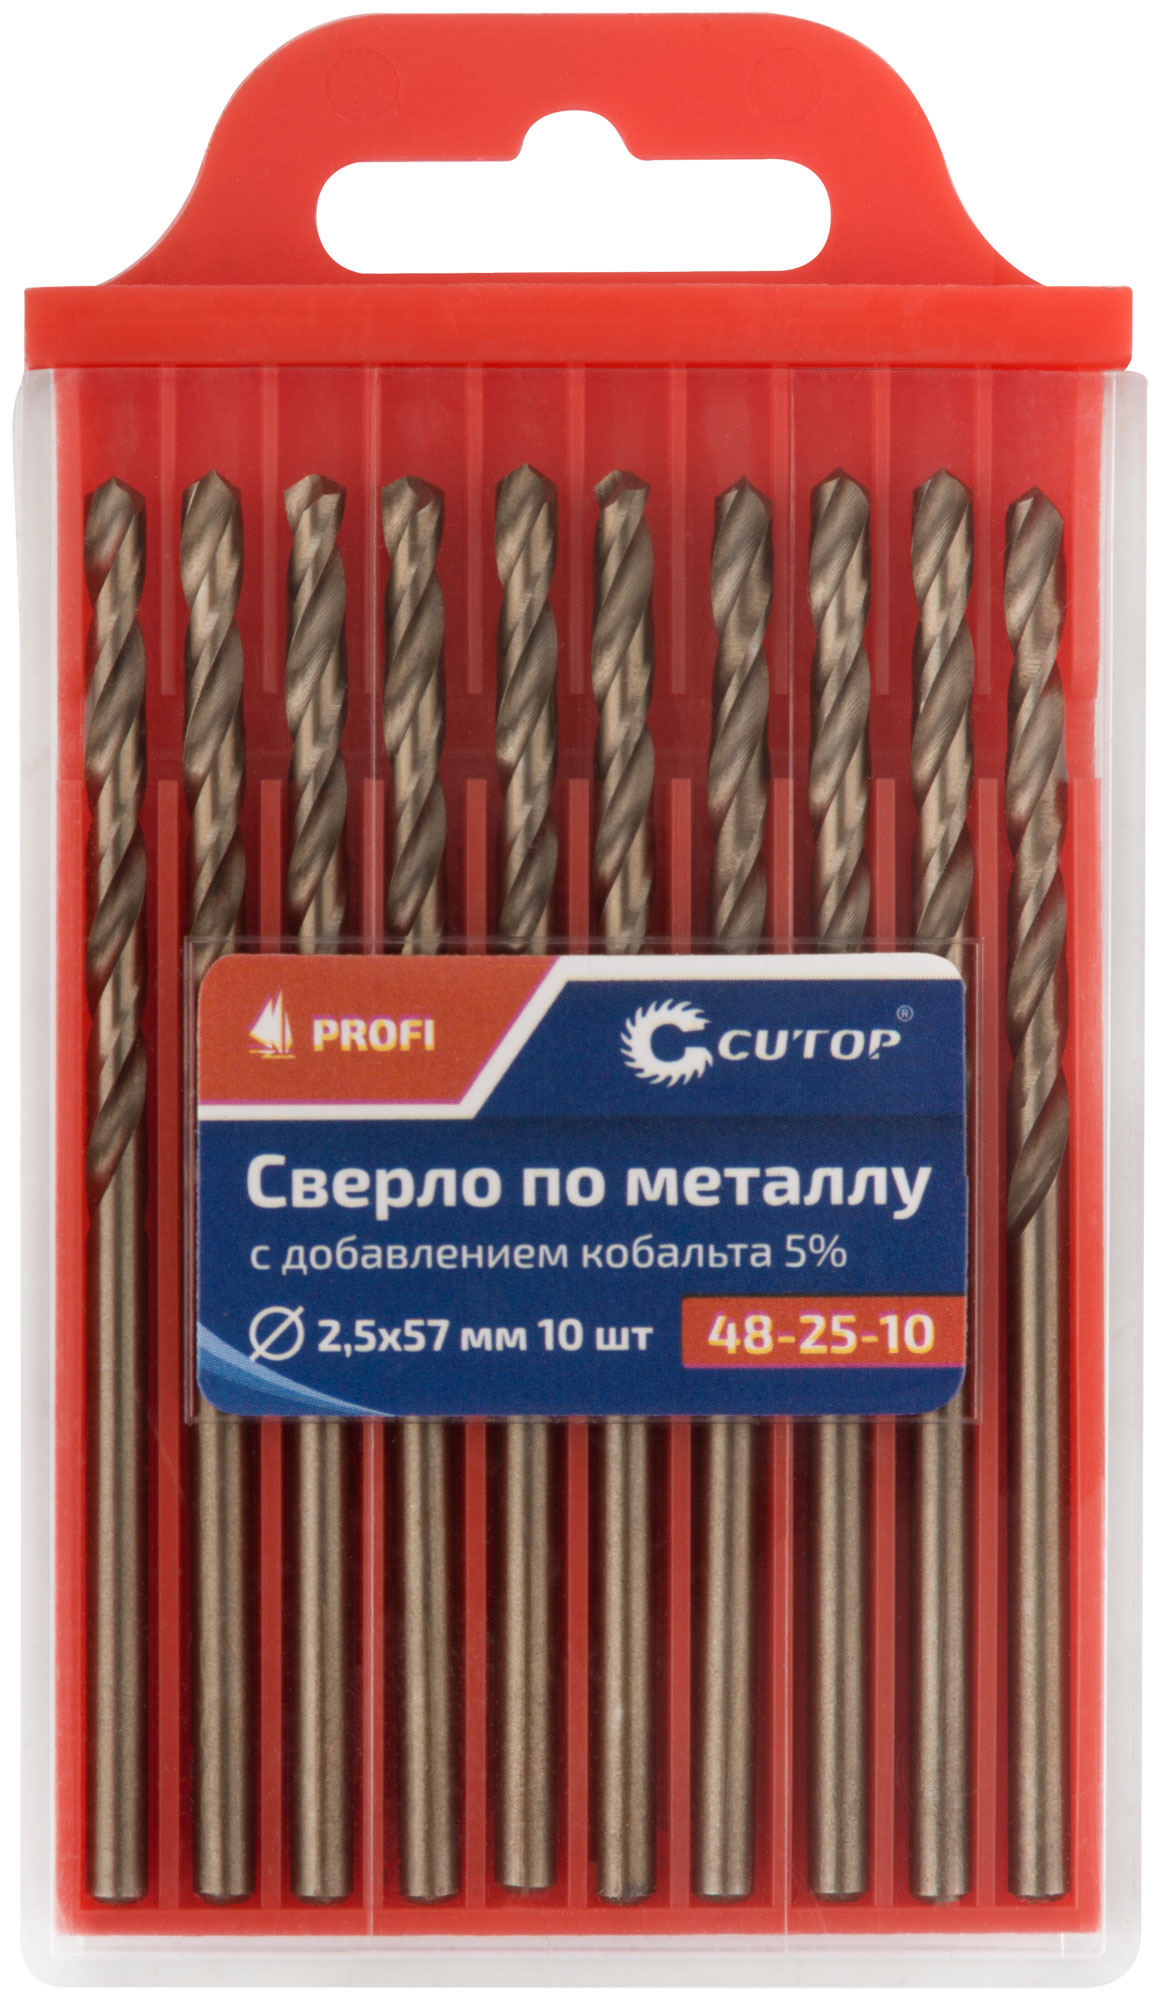 Сверло по металлу Cutop Profi с кобальтом 5%, 2,5 x 57 мм (10 шт)